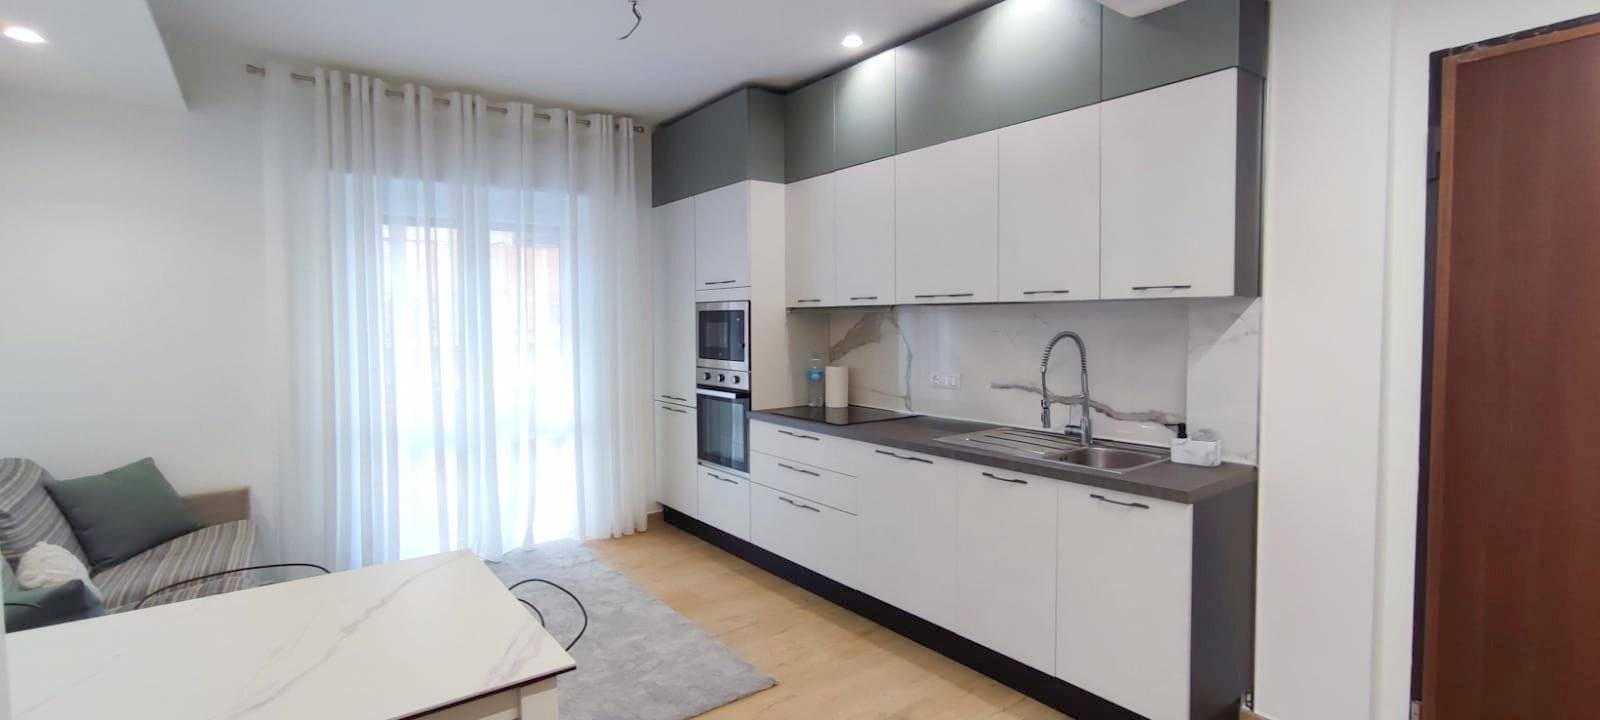 Appartamento in vendita a Albissola Marina, 3 locali, prezzo € 250.000 | PortaleAgenzieImmobiliari.it